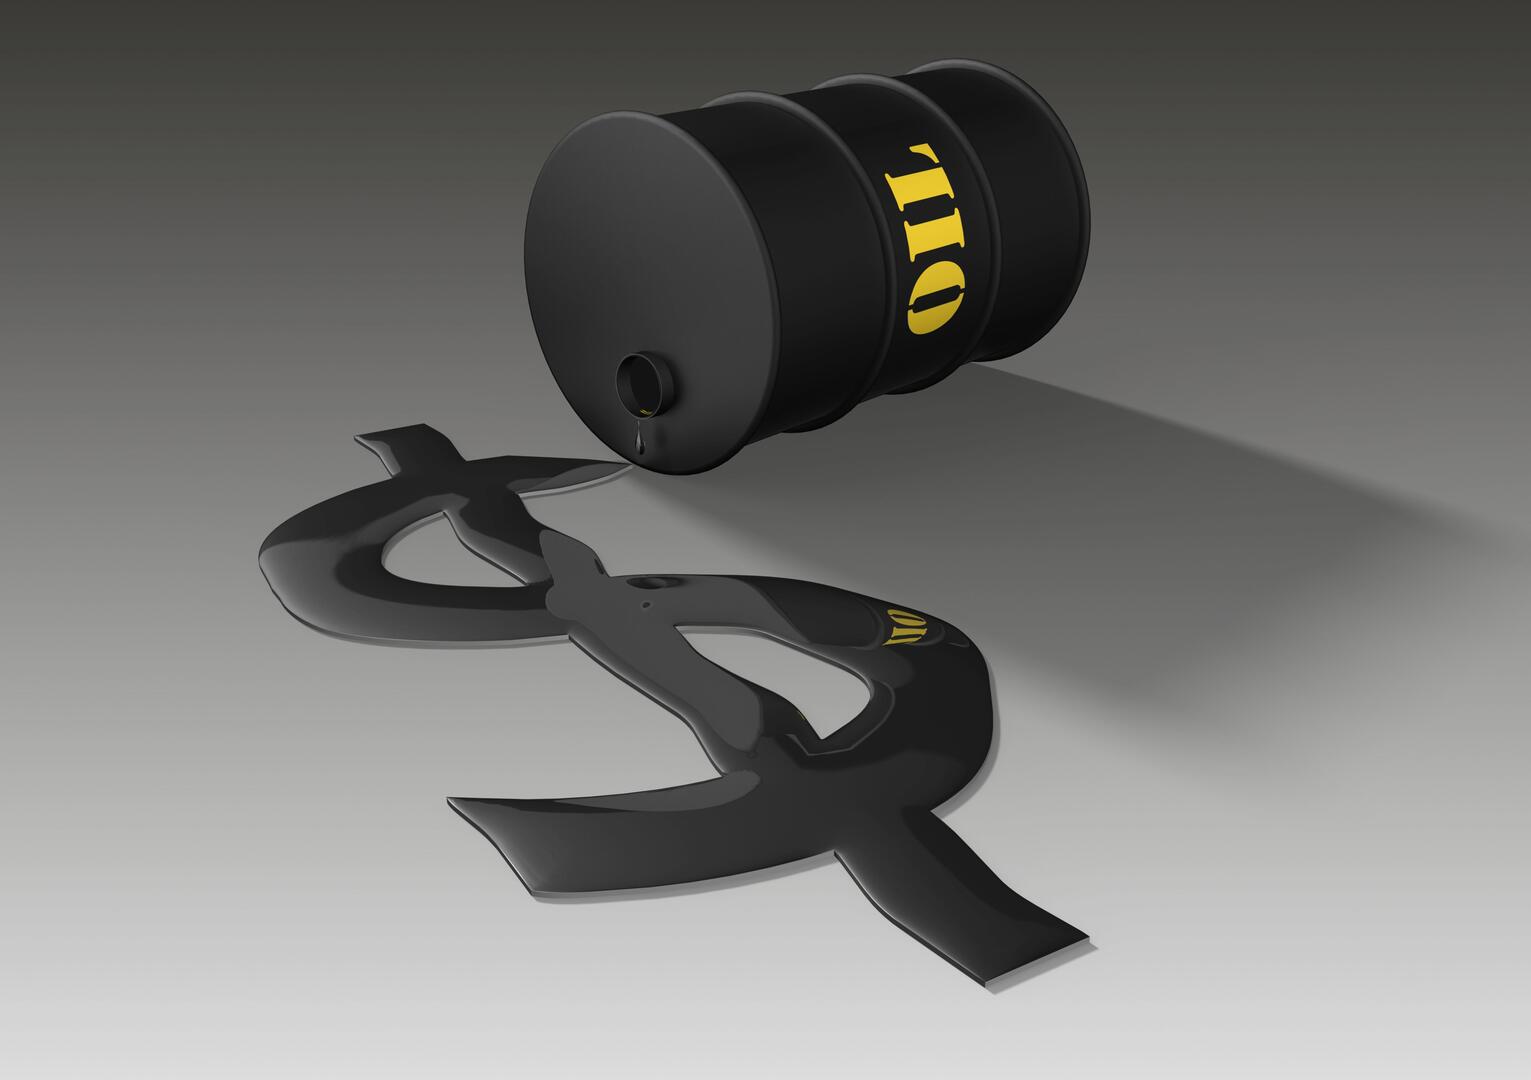 للمرة الأولى منذ نهاية 2014.. برميل النفط فوق مستوى 91 دولارا